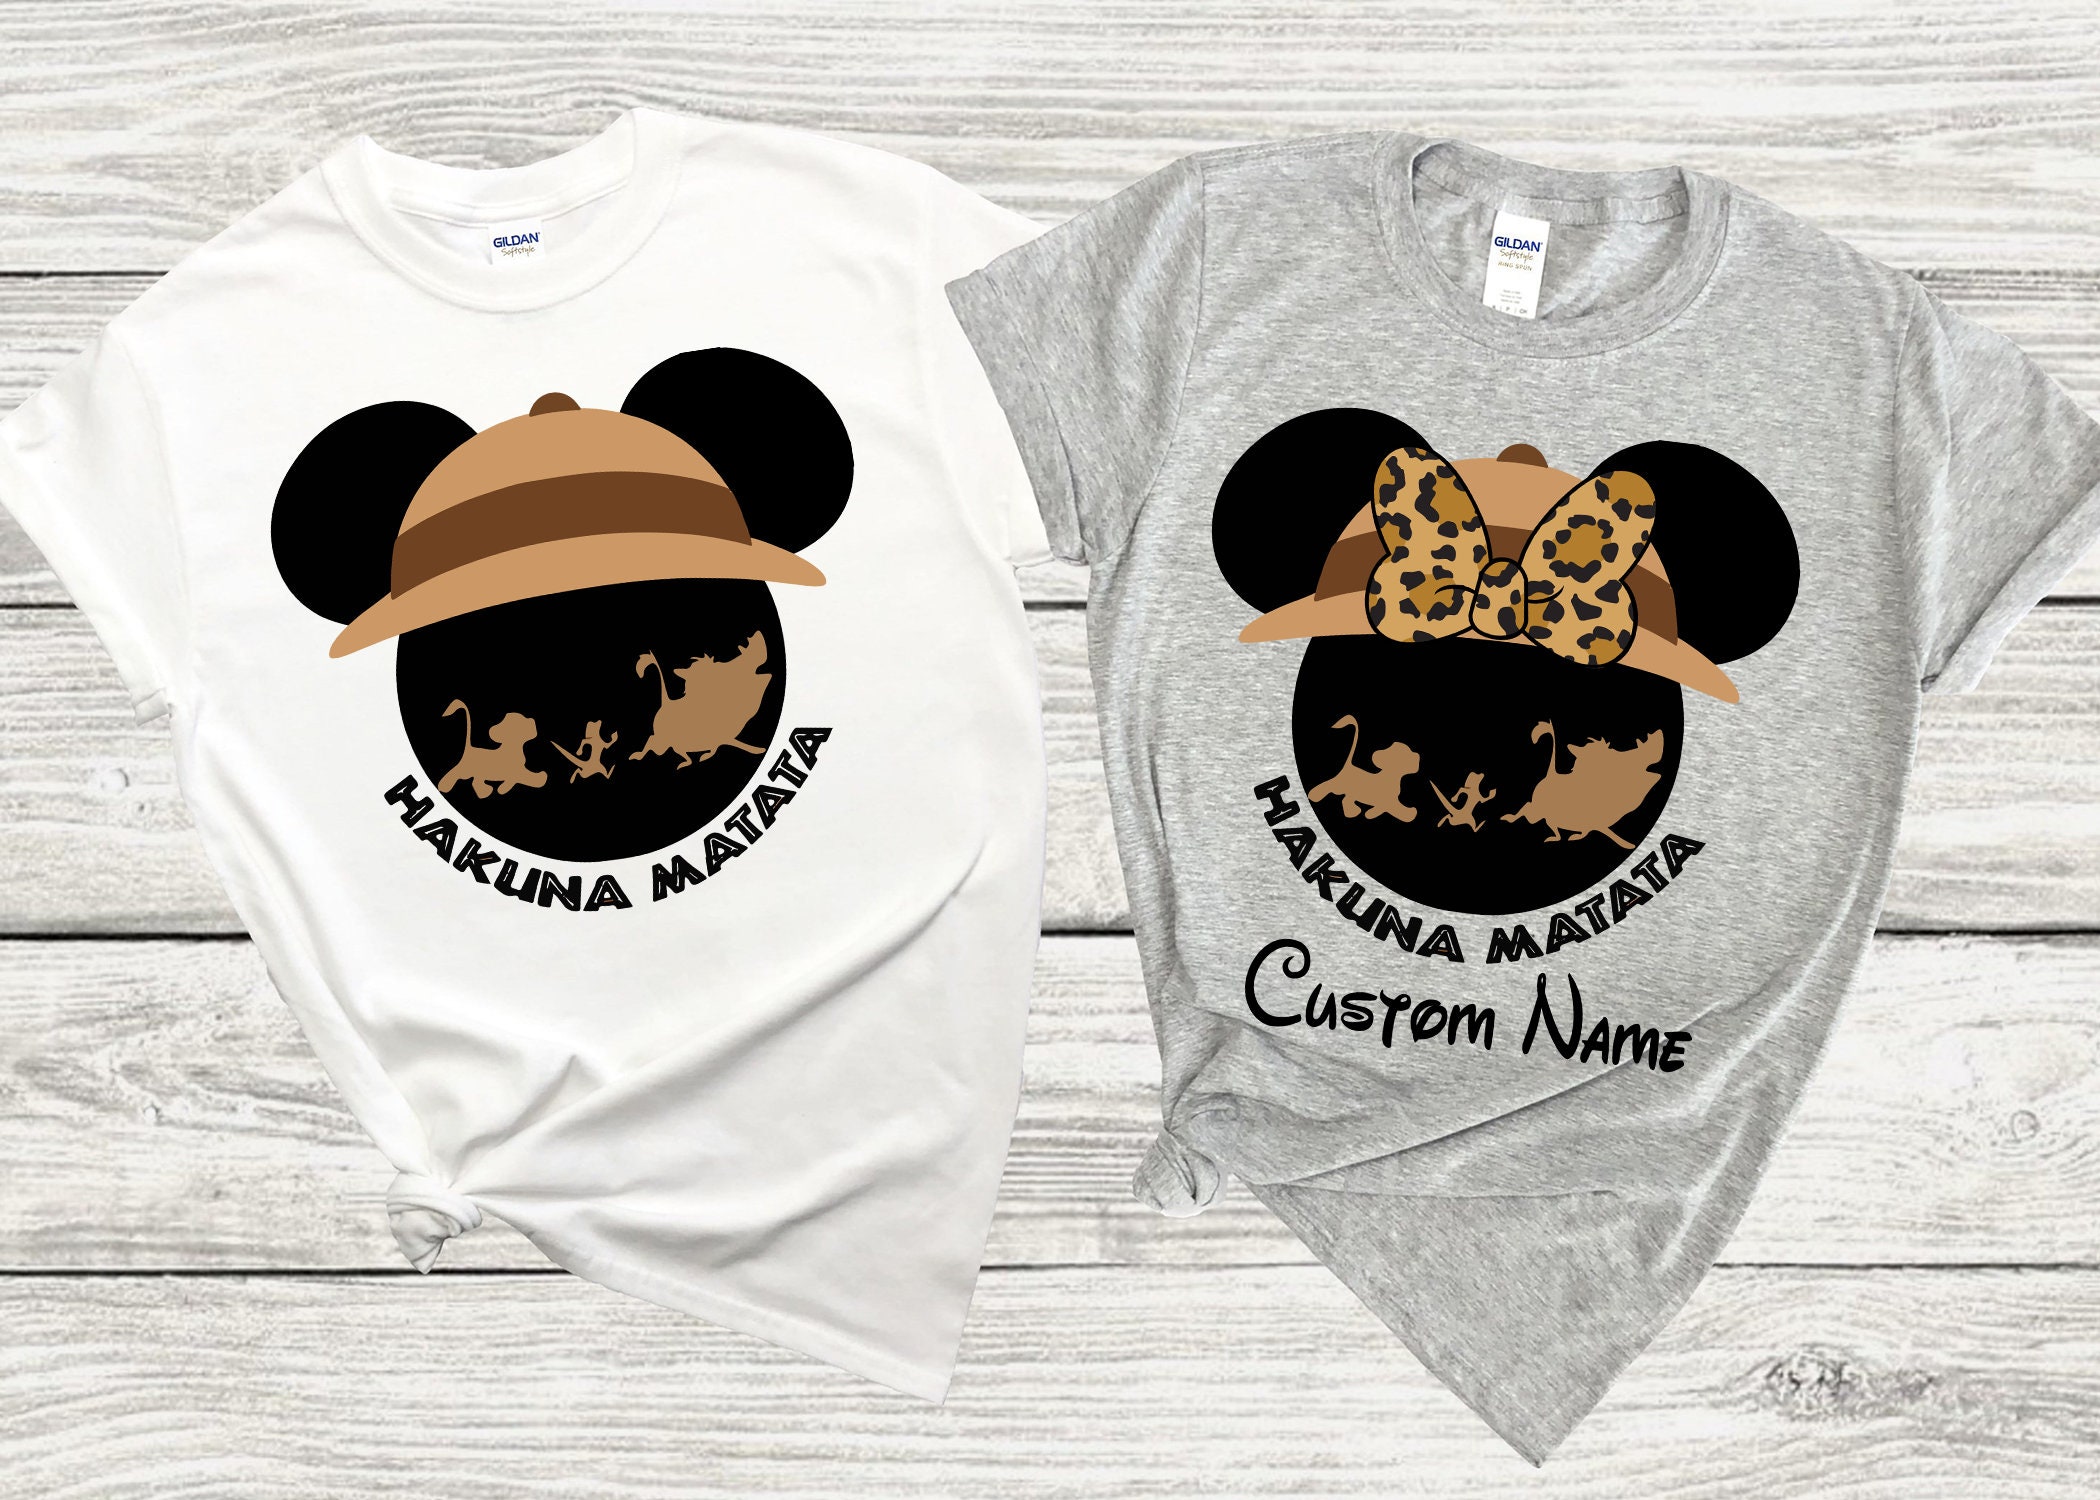 Animal Kingdom shirt-custom Disney shirt-Disney shirt-Disney Animal ...